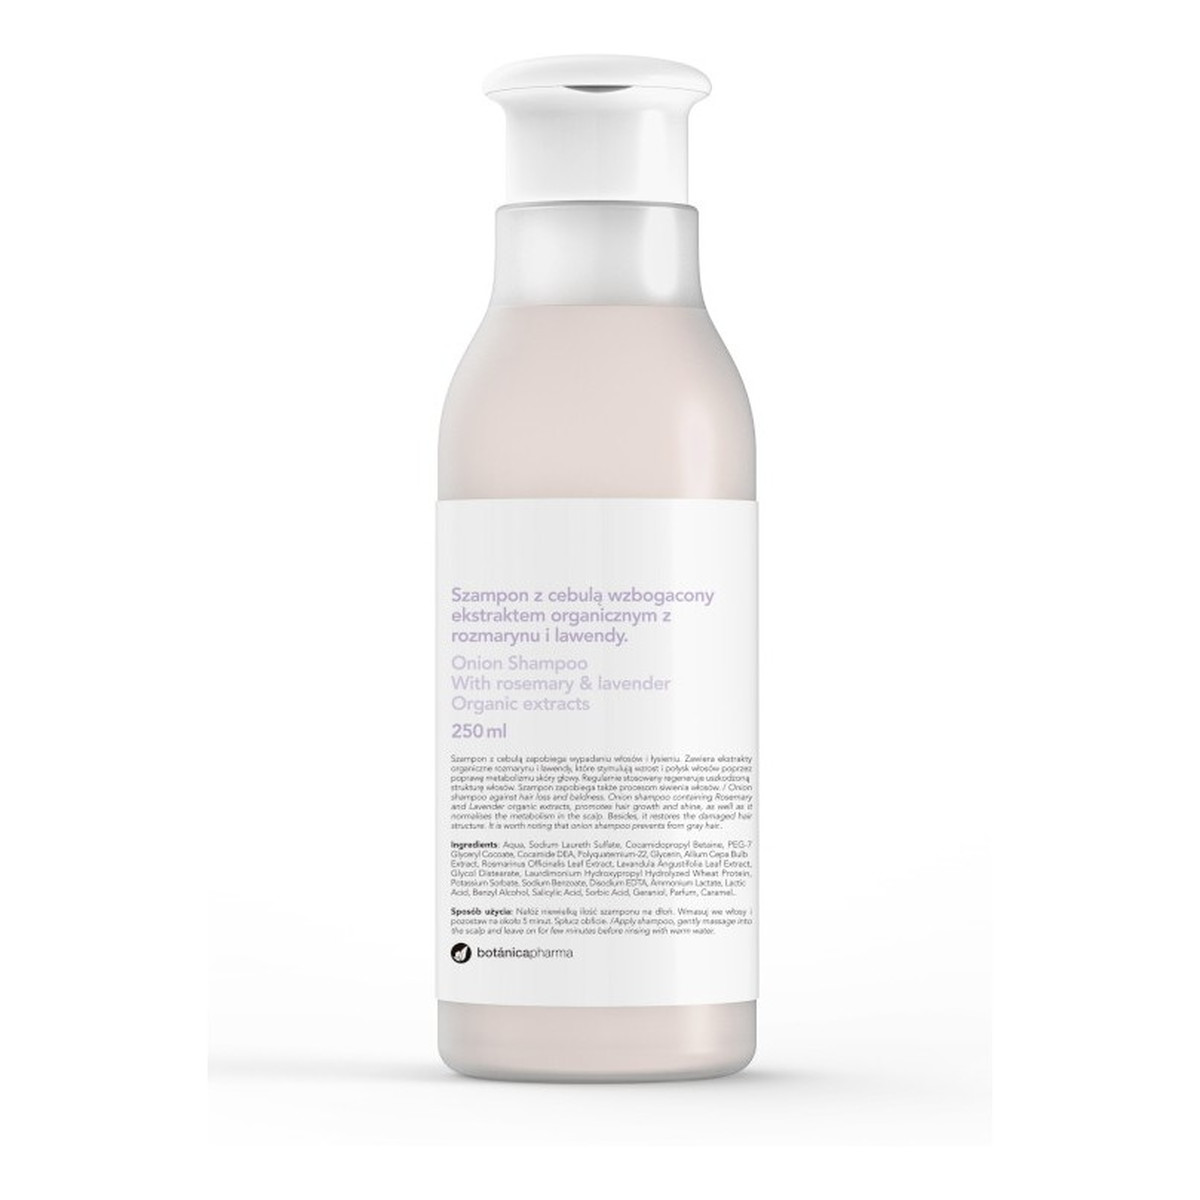 Botanicapharma Onion Shampoo - Szampon do włosów z cebulą wzbogacony ekstraktem organicznym z rozmarynu i lawendy 250ml